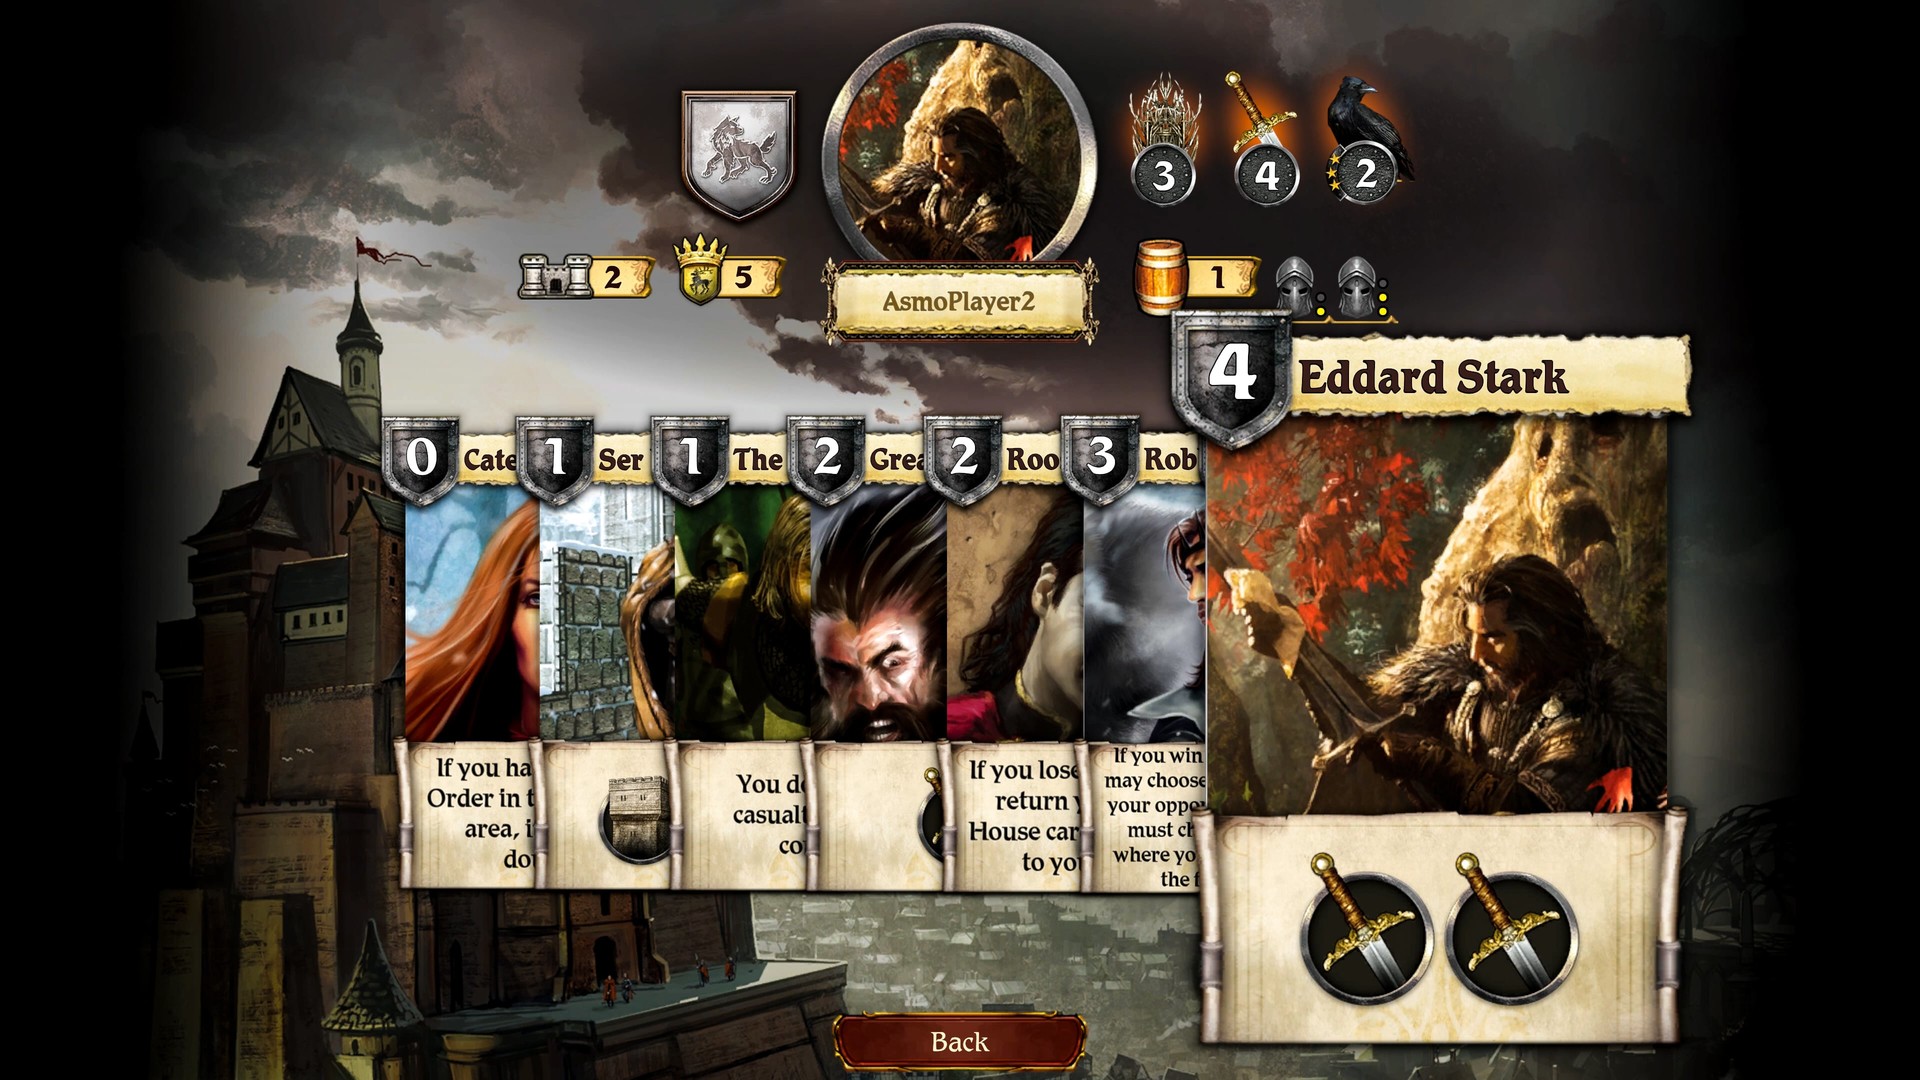 5 jogos de tabuleiro e de cartas inspirados em Game of Thrones - AdoroCinema